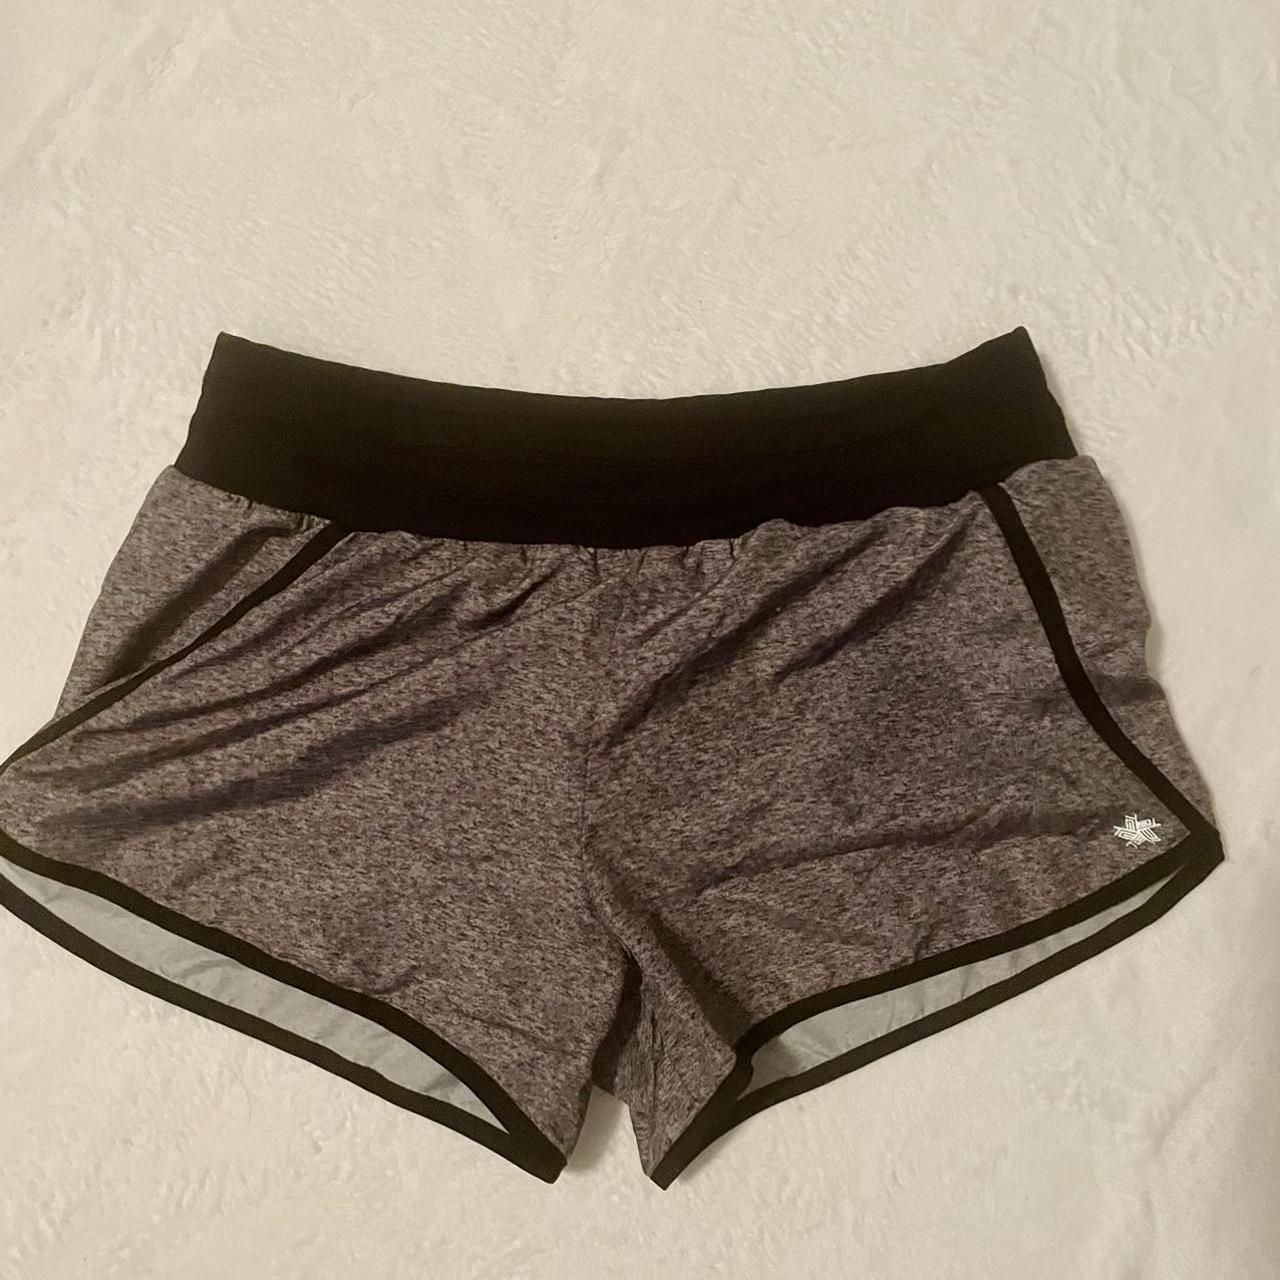 Tek Gear Shorts w/ built in underwear, in great - Depop